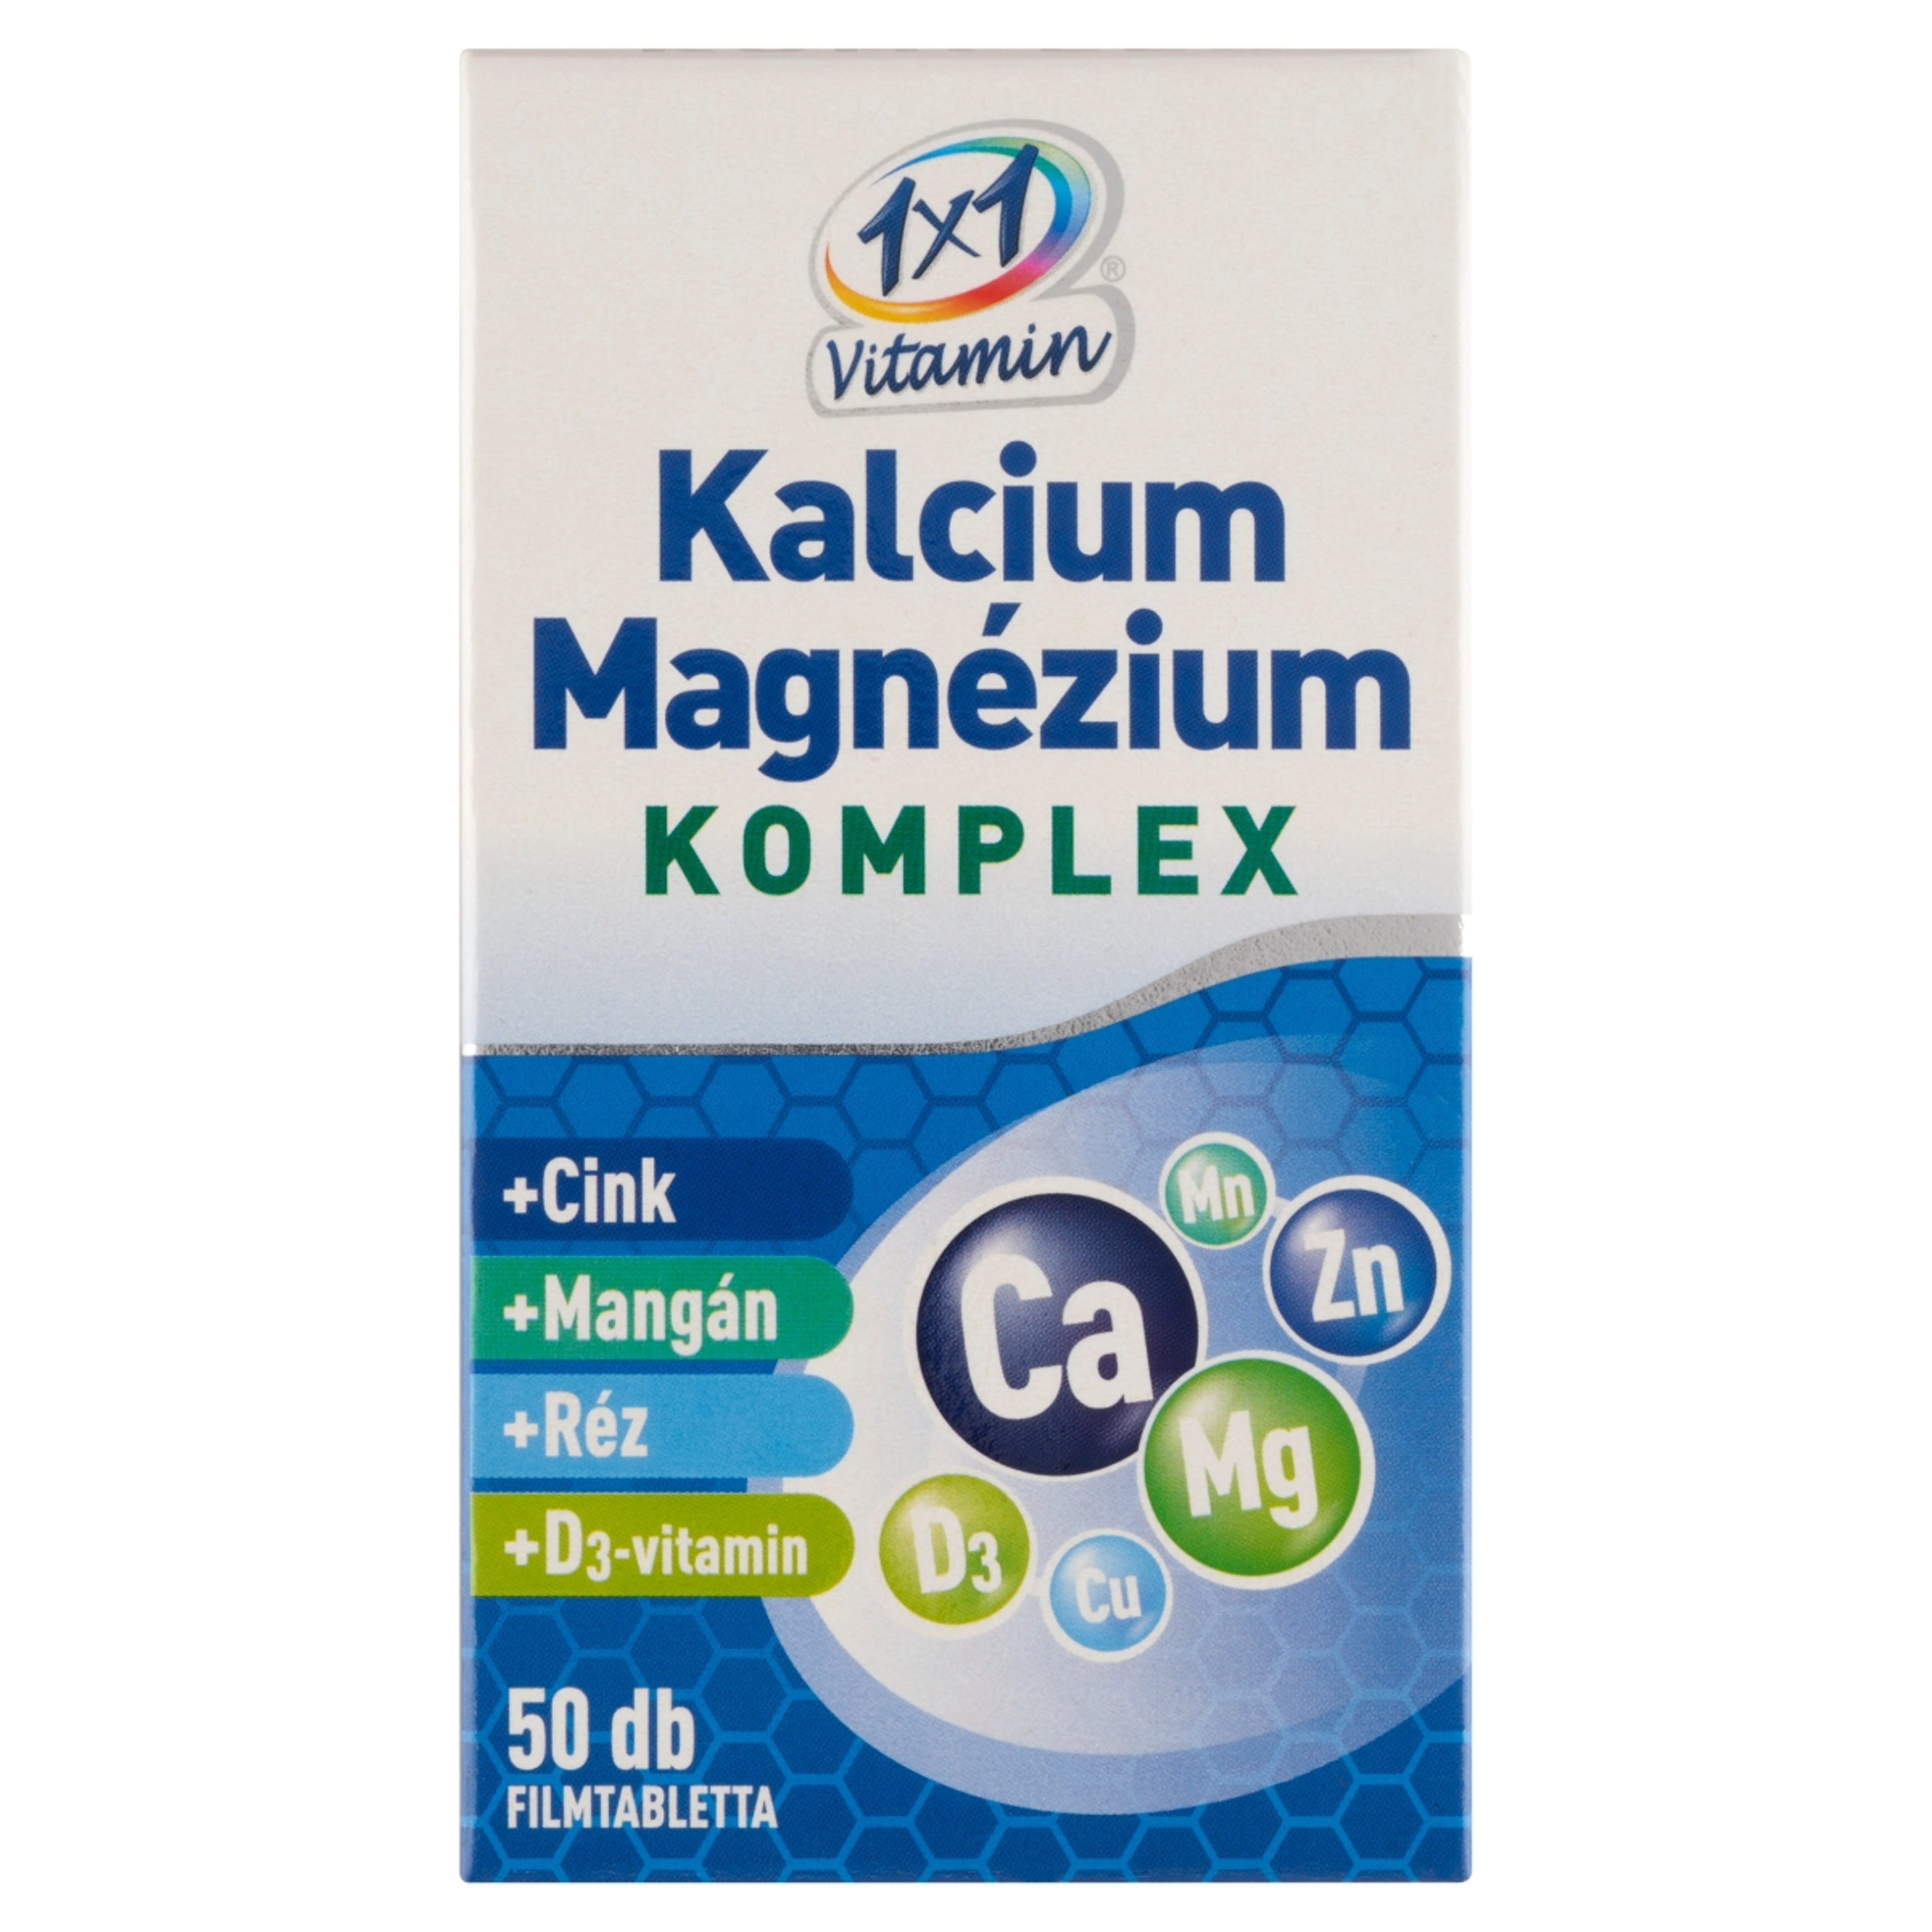 1x1 Vitamin Kalcium + Magnézium Komplex filmtabletta - 50 db-1